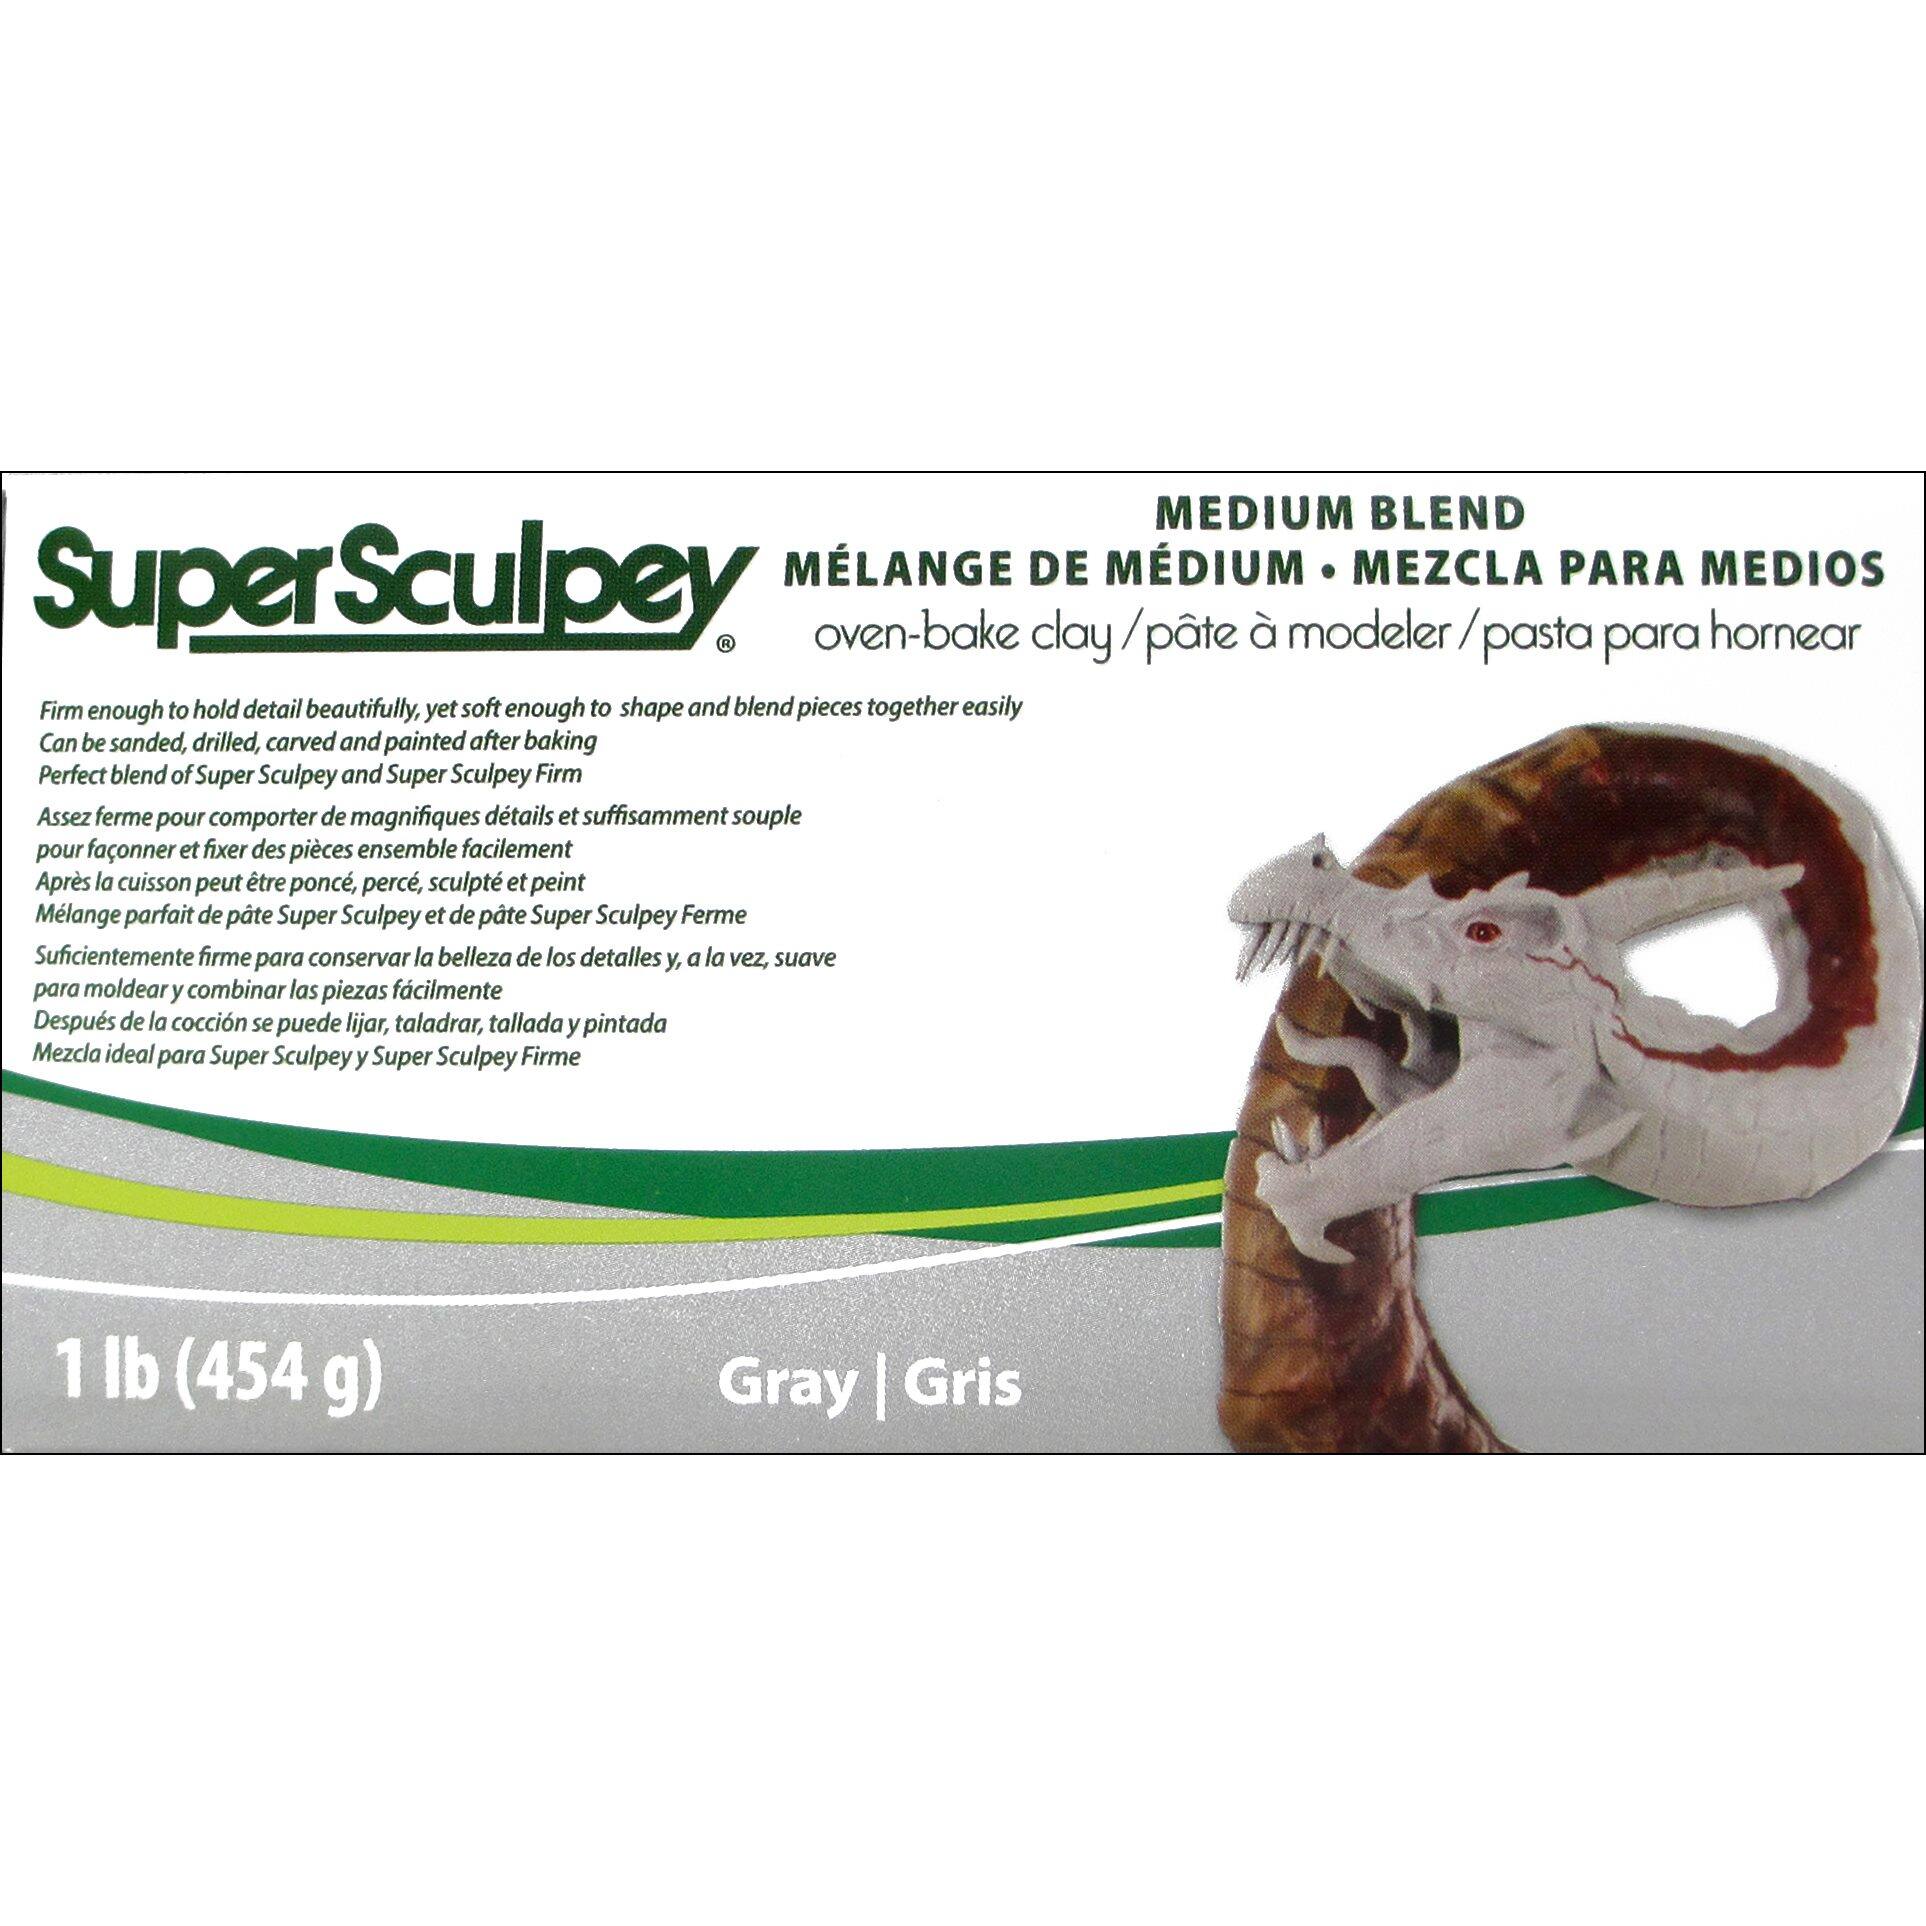 Super Sculpey® 1lb. Gray Medium Blend